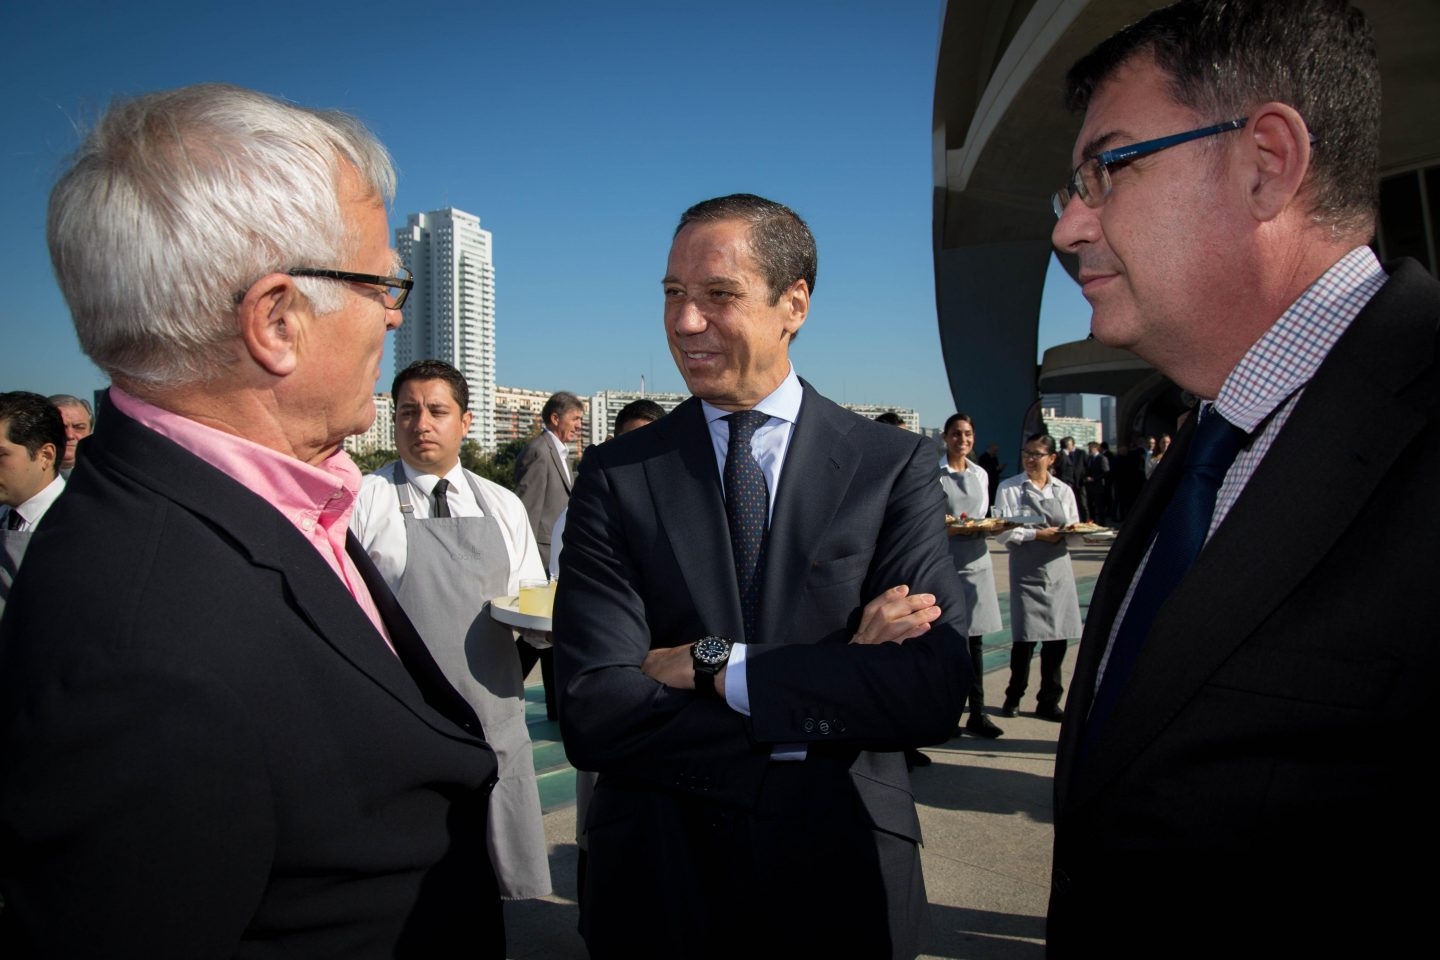 El ex presidente de la Comunidad Valenciana, Eduardo Zaplana,, conversa con el alcalde de Valencia, Joan Ribó y el presidente de Les Corts, Enric Morera.